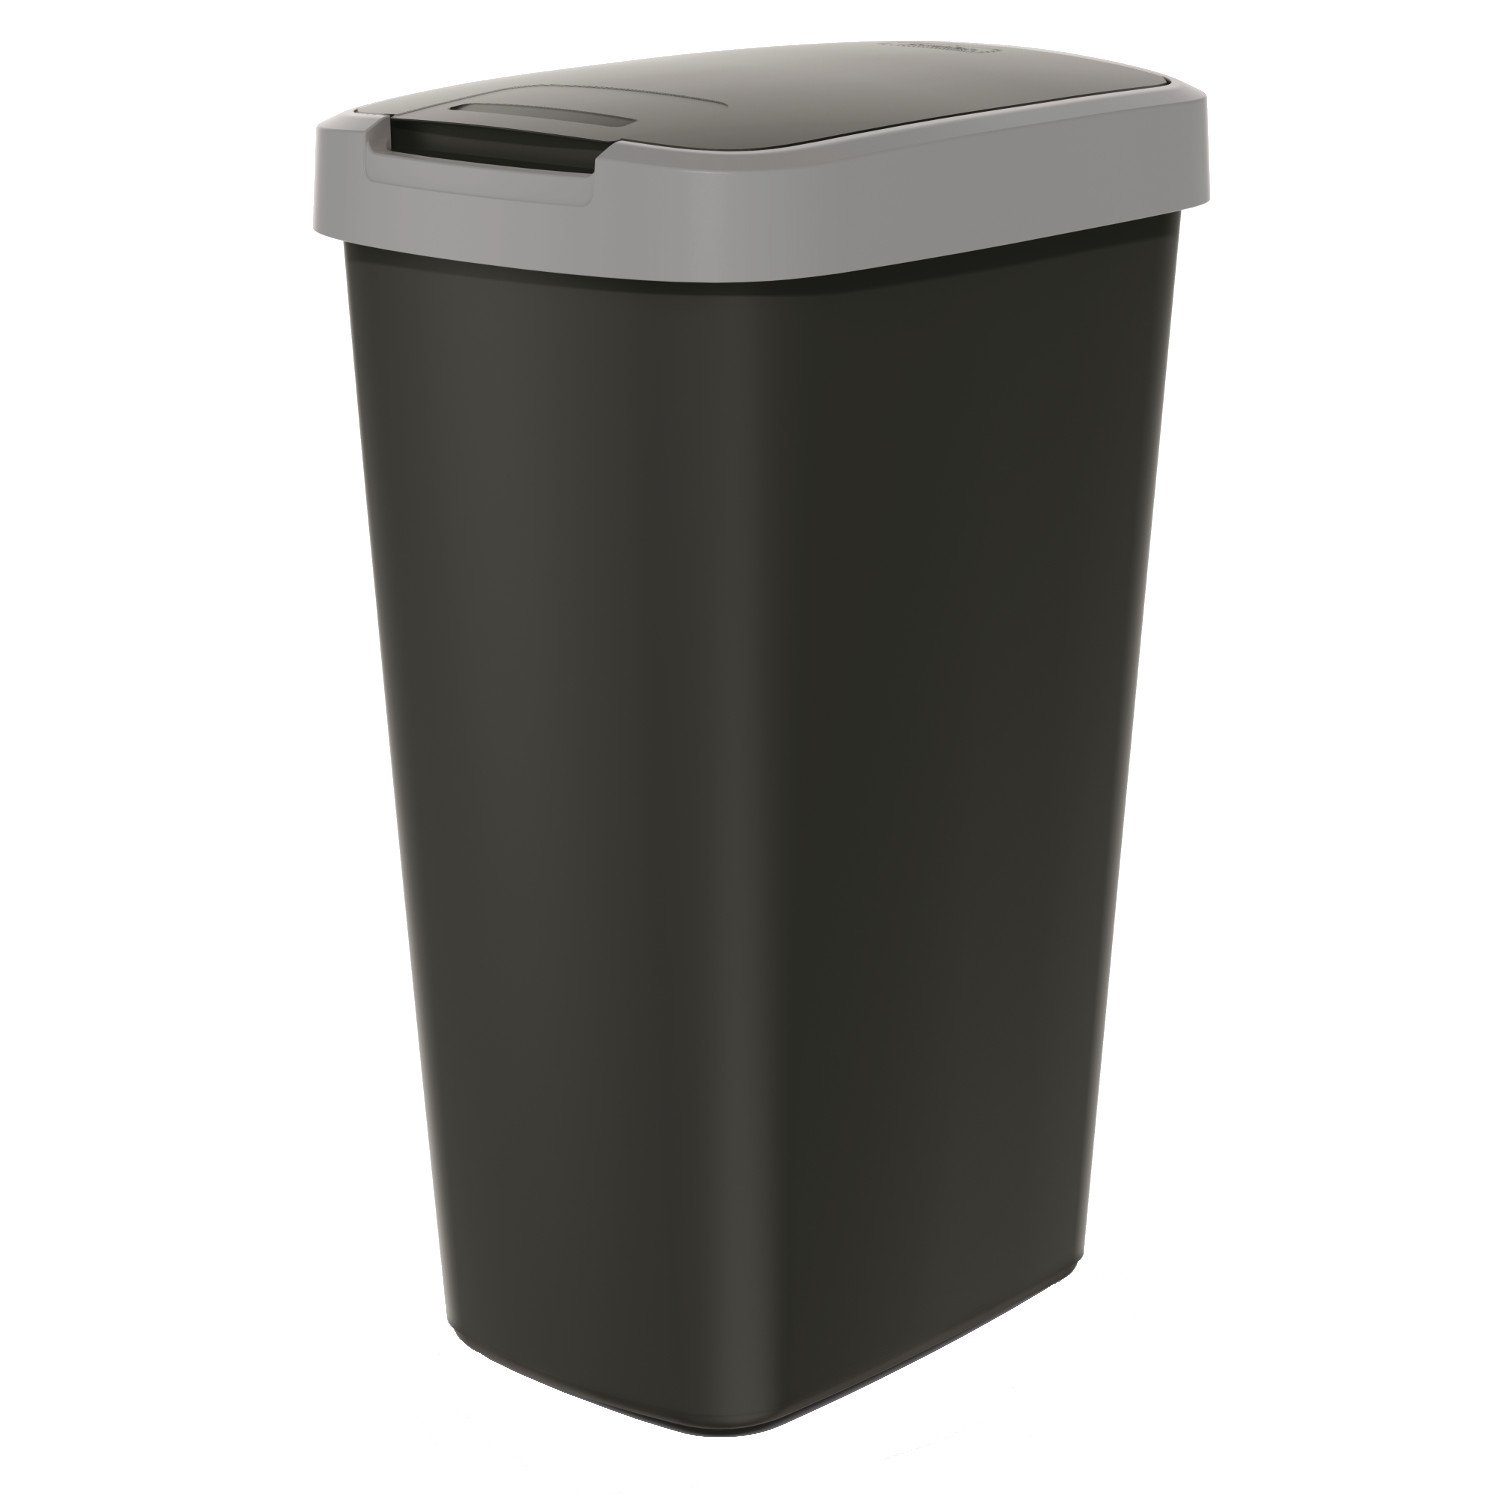 Keden Mülleimer Compacta Q, Abfallbehälter 45l mit Deckel KEDEN COMPACTA Q Grau